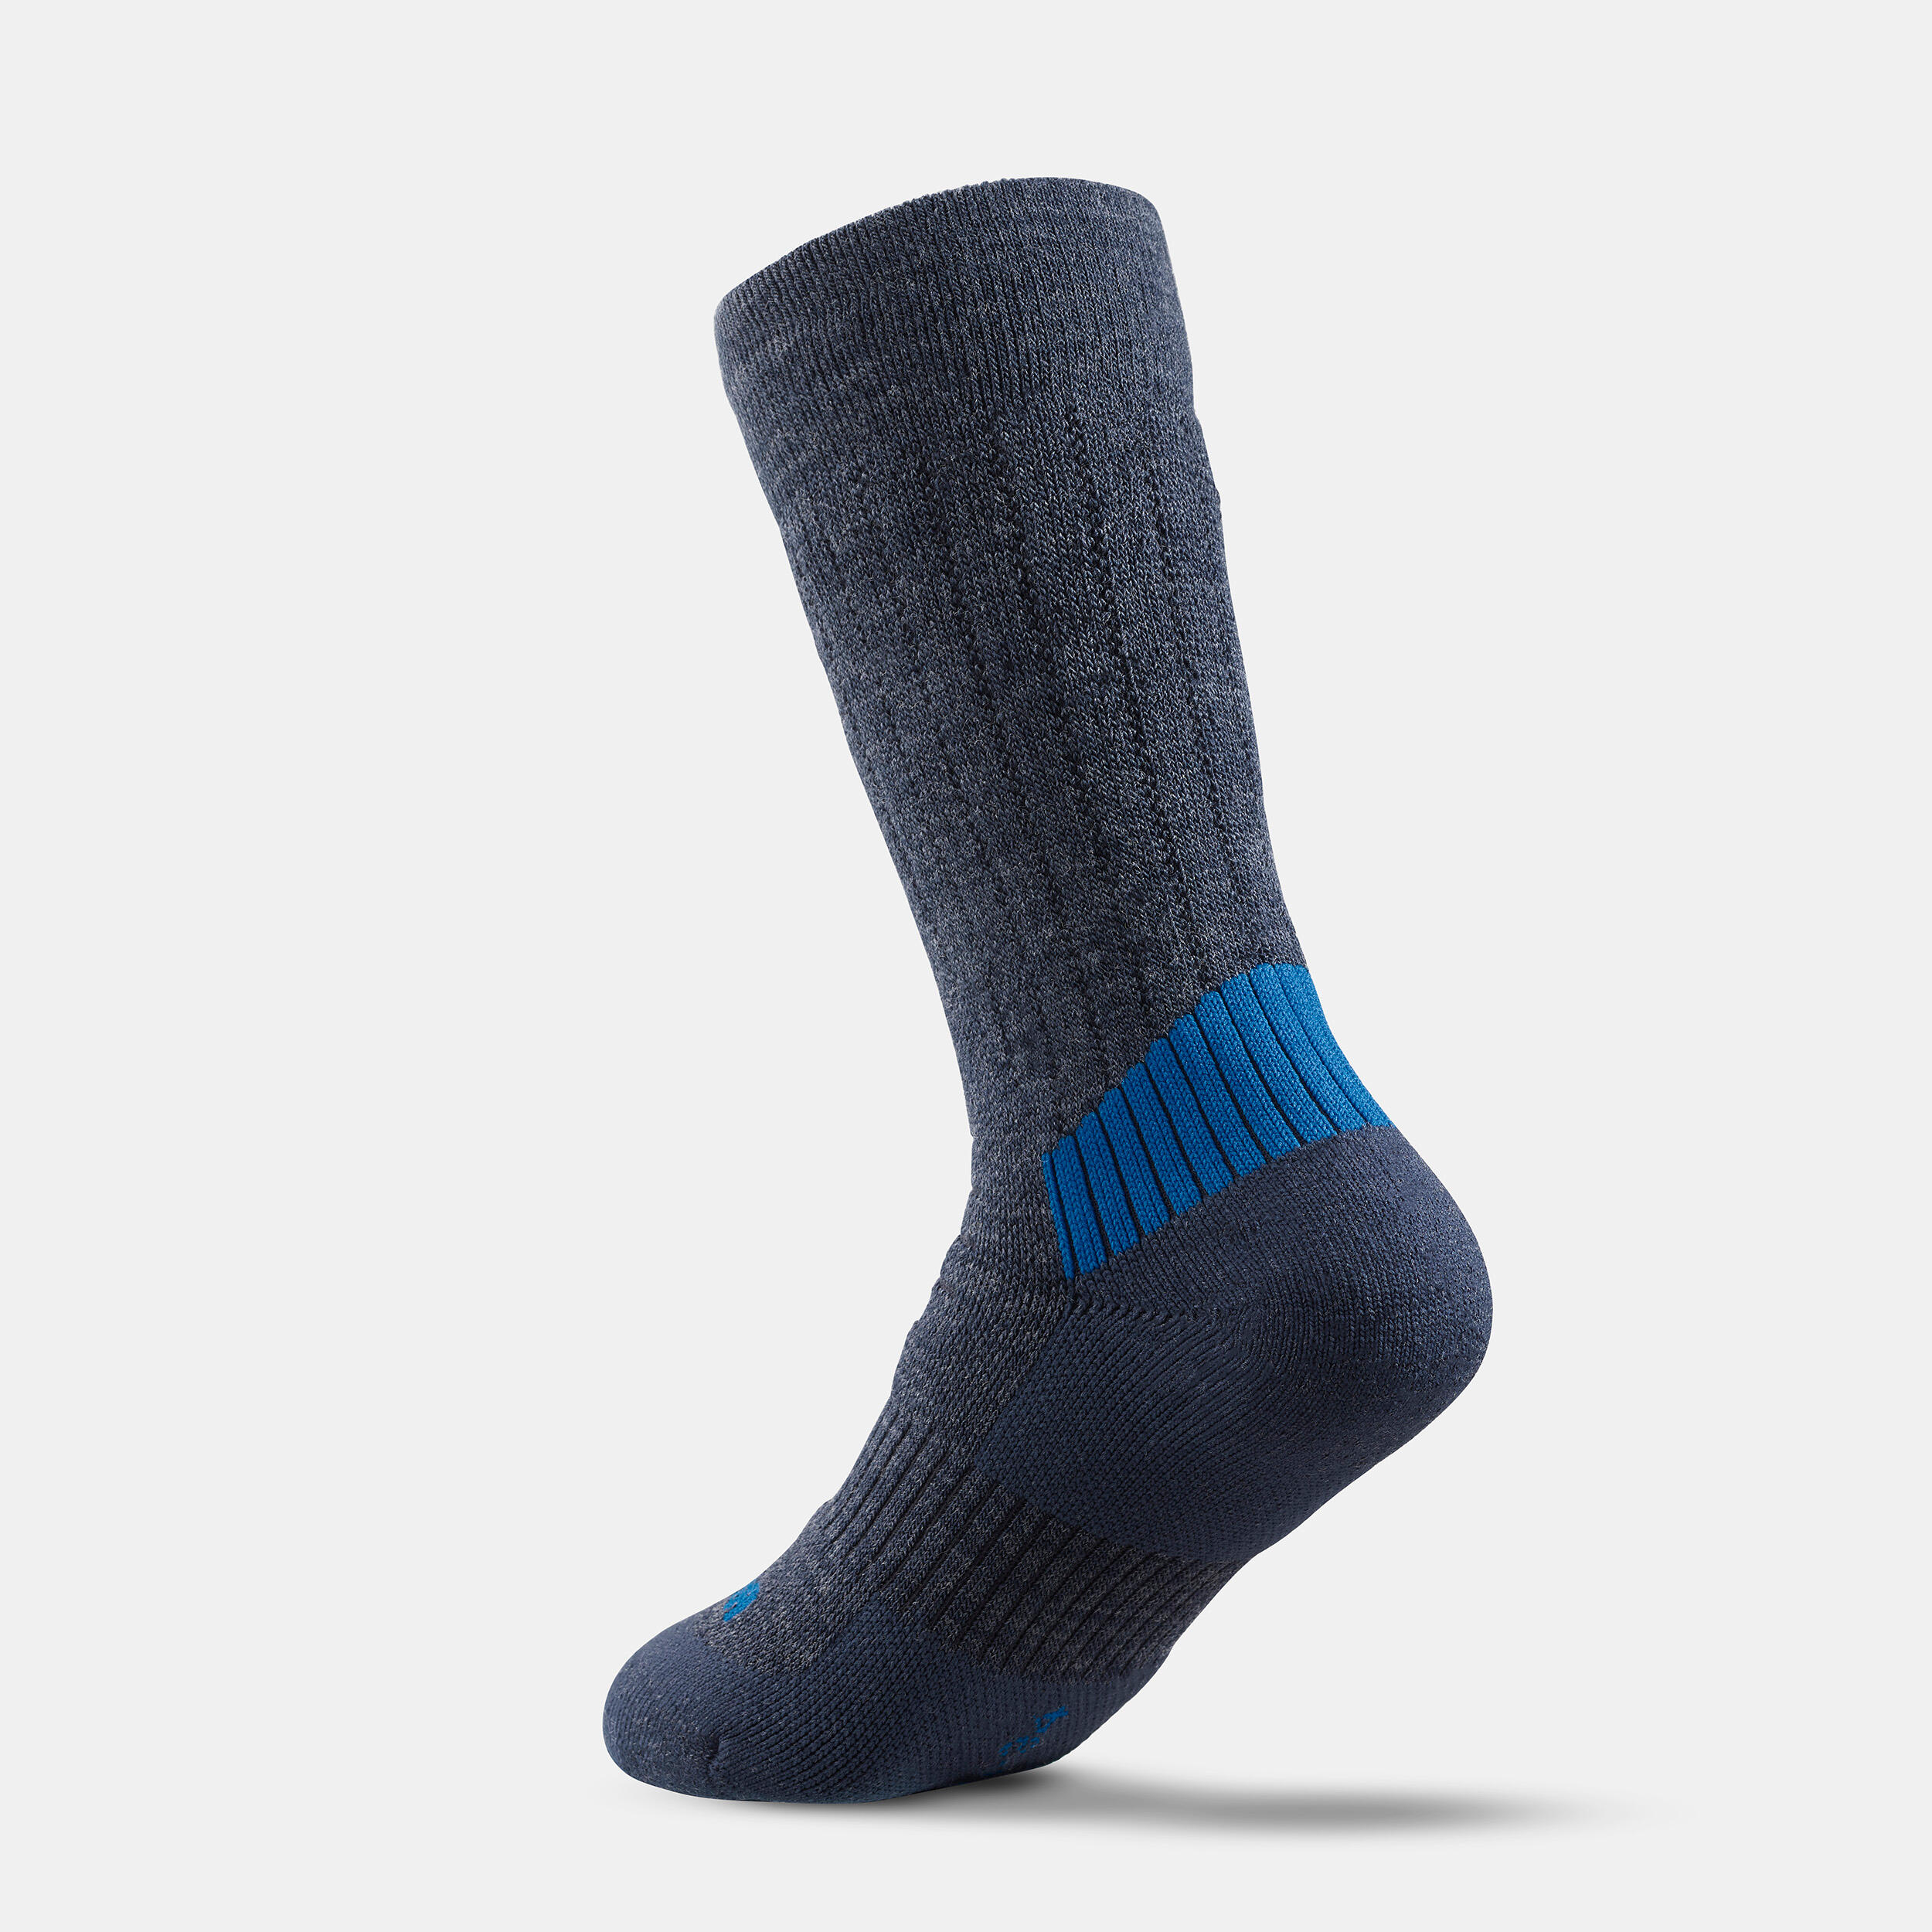 Kids’ Warm Hiking Socks SH100 Mid 2 Pairs 8/9